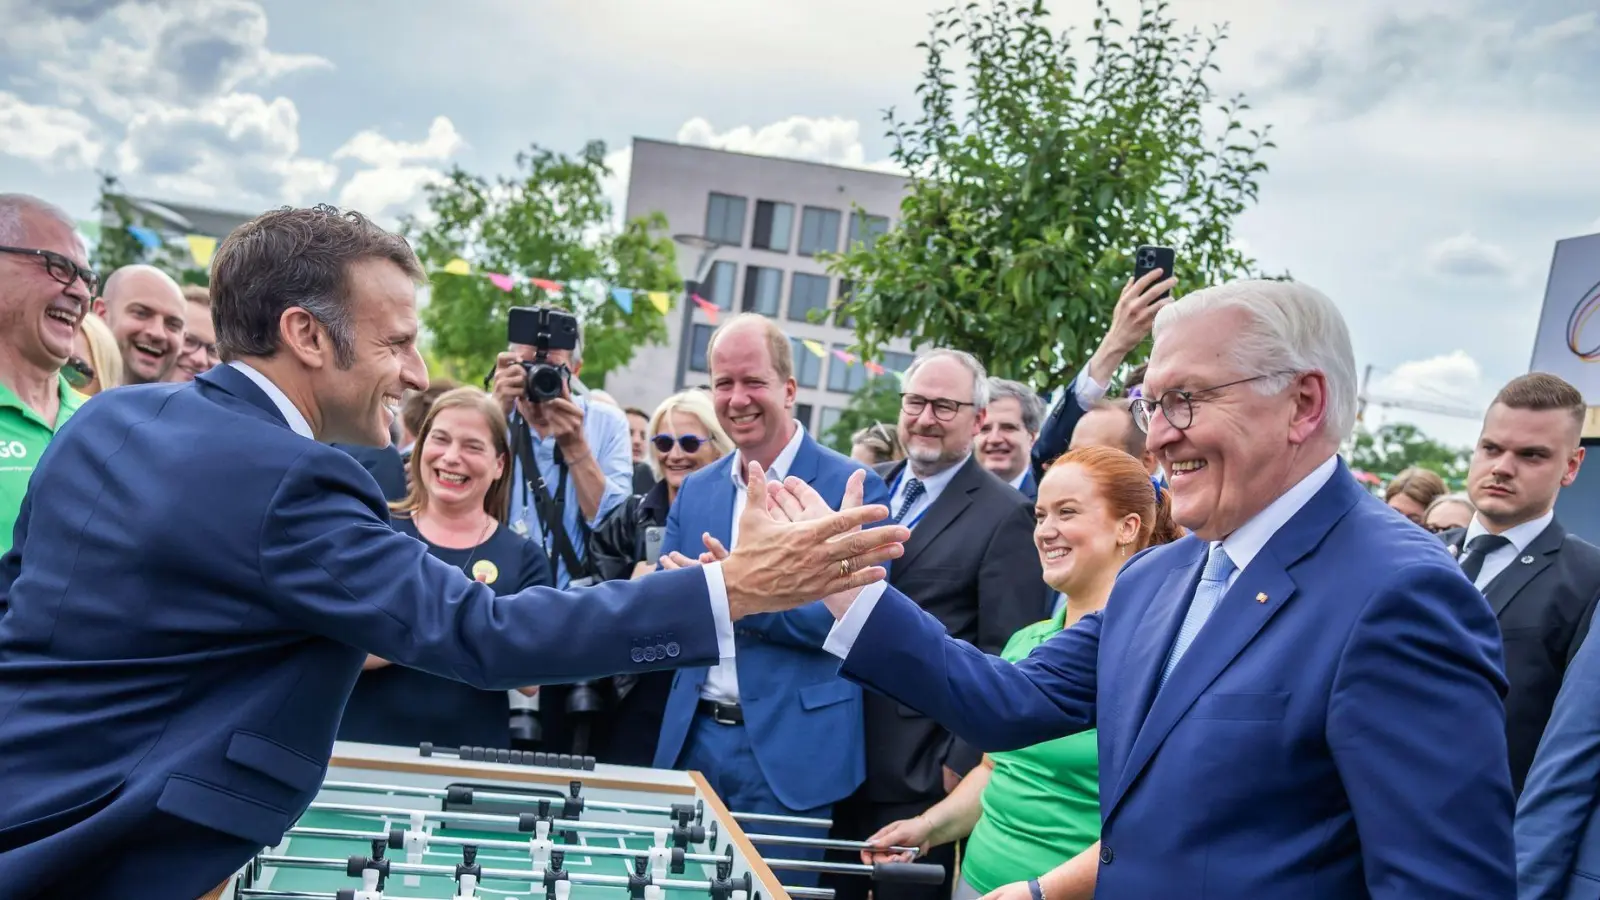 Auf eine Runde Tischkicker: Der französische Präsident Emmanuel Macron gemeinsam mit Bundespräsident Frank-Walter Steinmeier beim Demokratiefest in Berlin. (Foto: Michael Kappeler/dpa)